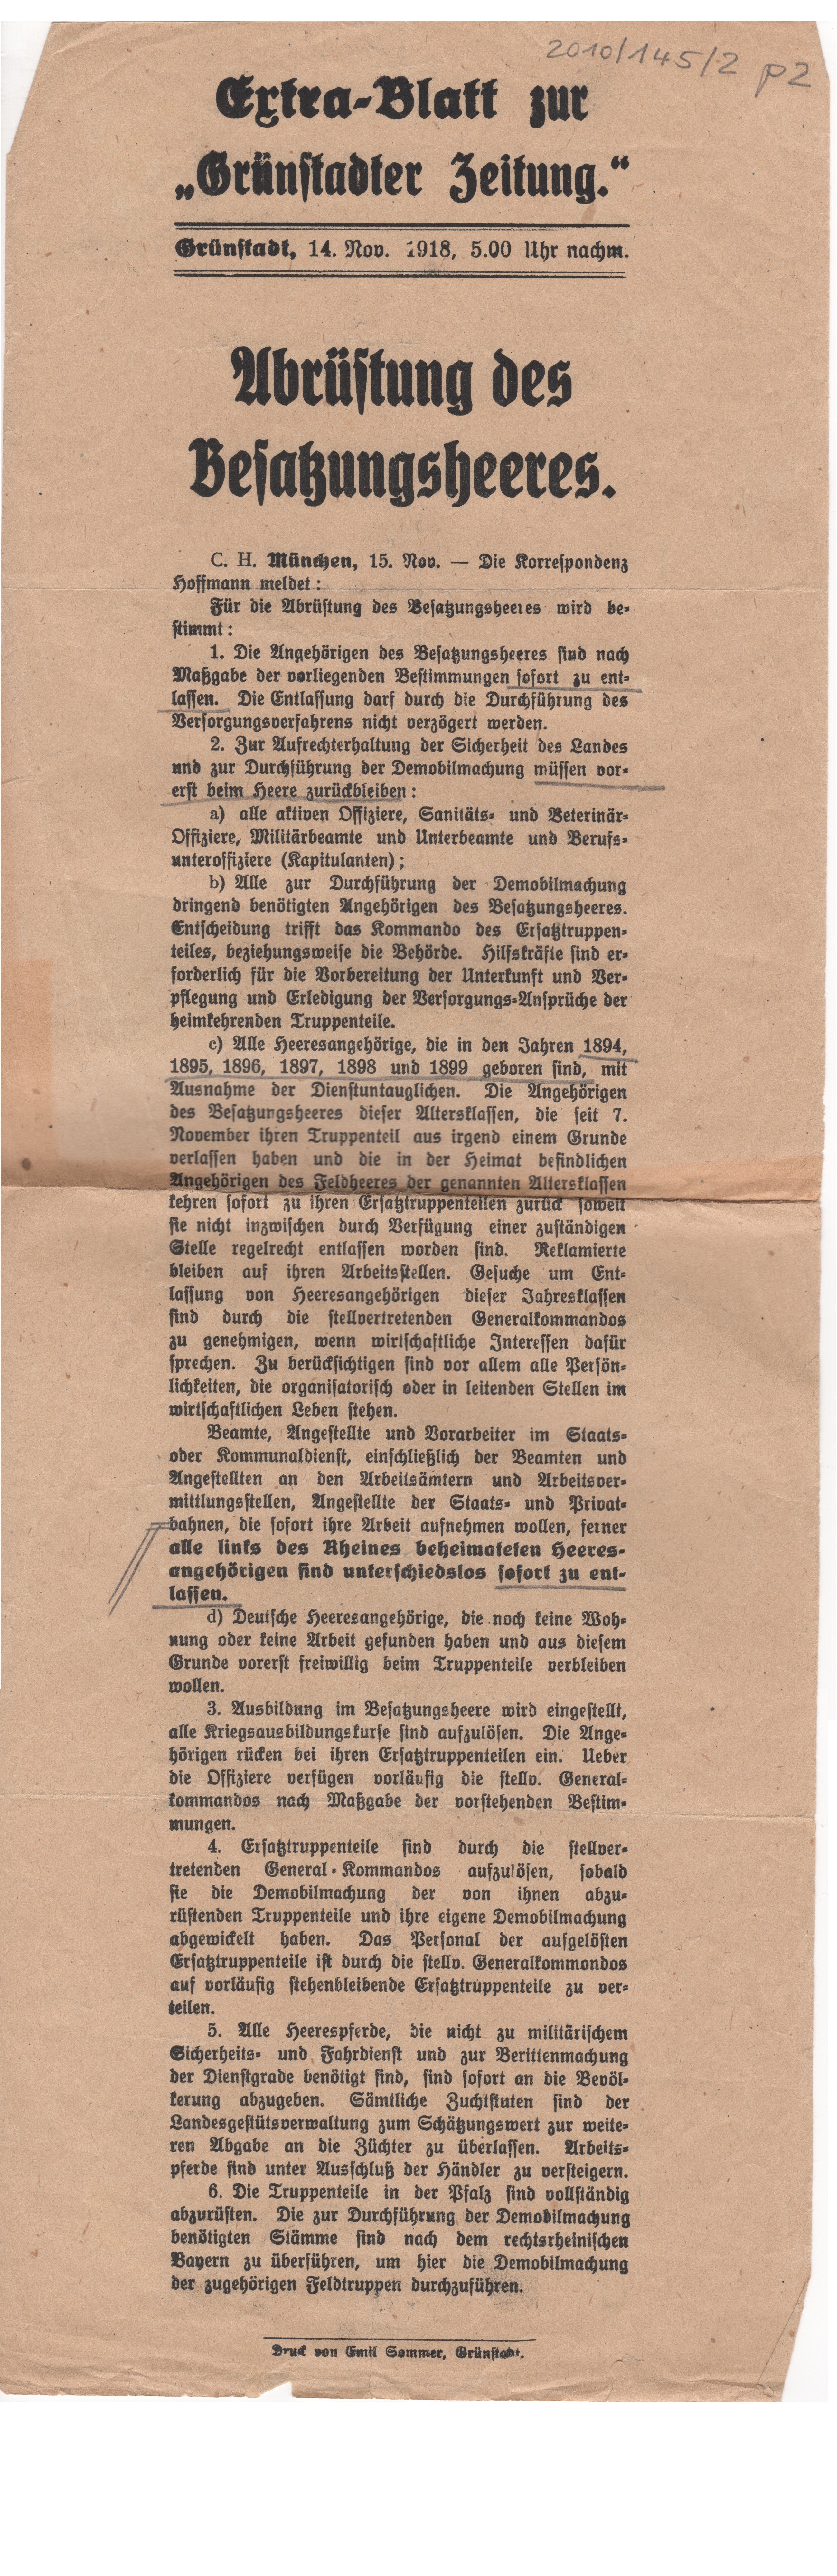 Schreiben; Extrablatt: Abrüstung des Besatzungsheeres; Schenkung von Kirra Orth; 1918 (Stadtmuseum Bad Dürkheim im Kulturzentrum Haus Catoir CC BY-NC-SA)